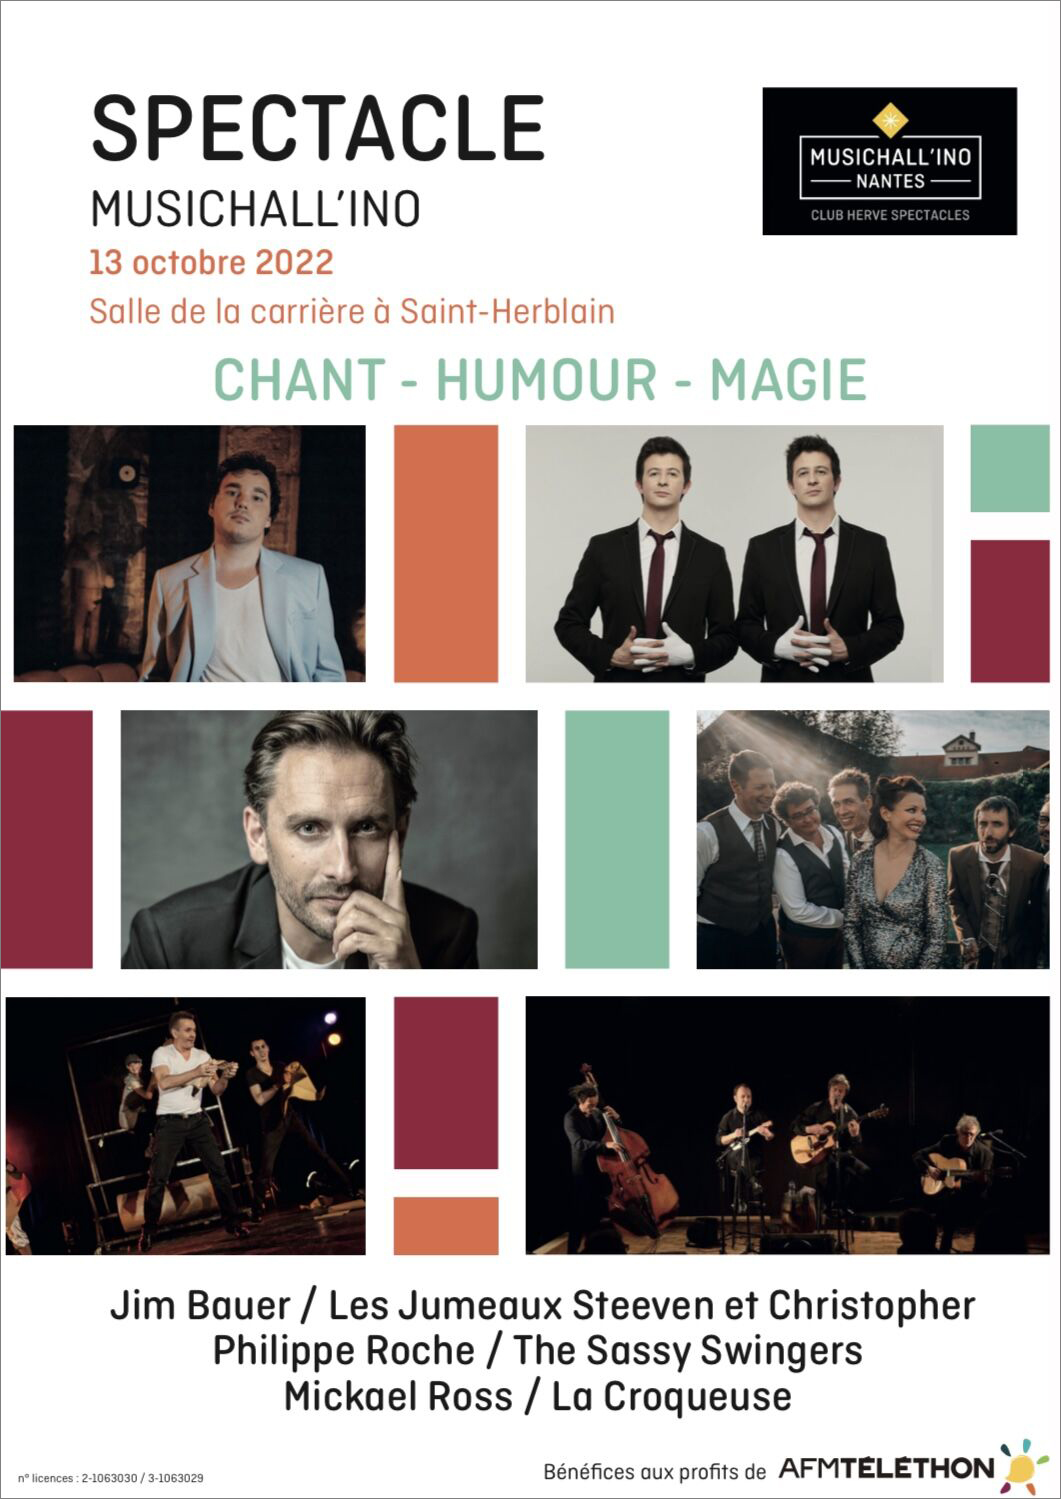 MUSICHALL'INO Nantes - Lancement d'un premier spectacle